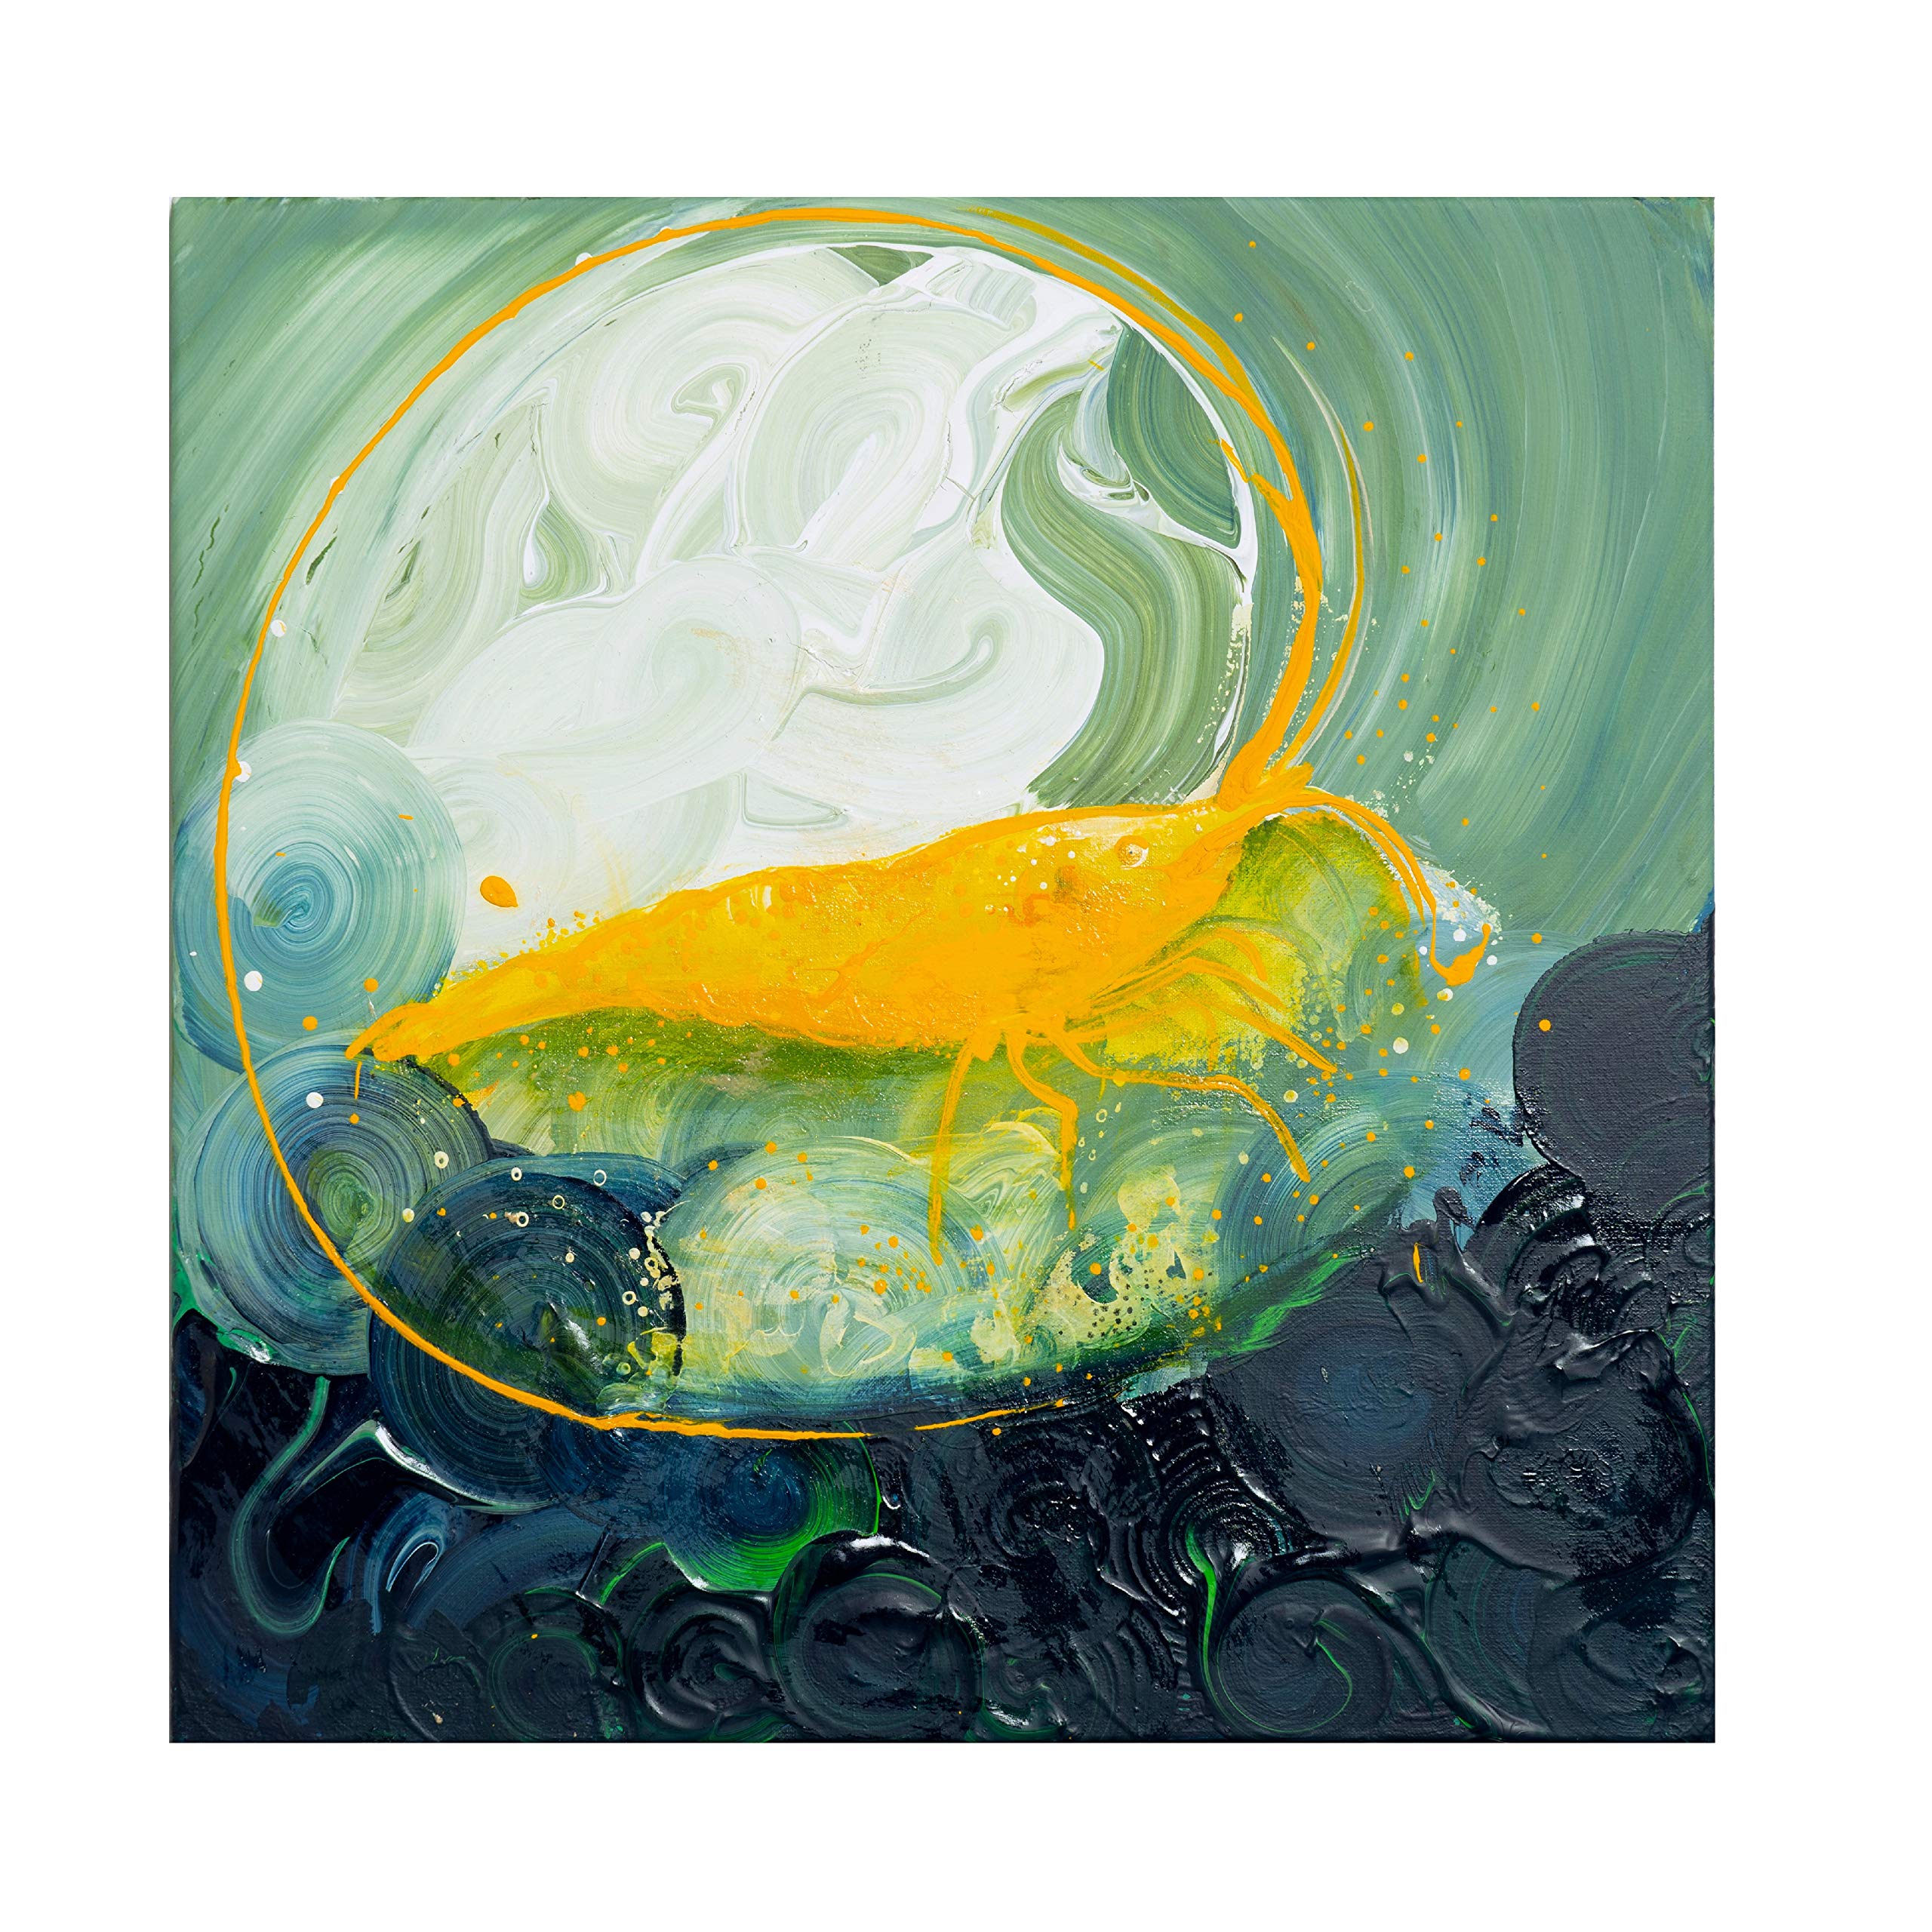 GARNELEN4YOU ArtLine Garnelen Wandbild #1 | Leinwand Kunstdruck von Leinwandgemälde | Shrimp Deko mit 3D-Effekt für Garnelenliebhaber (40 x 40 cm)